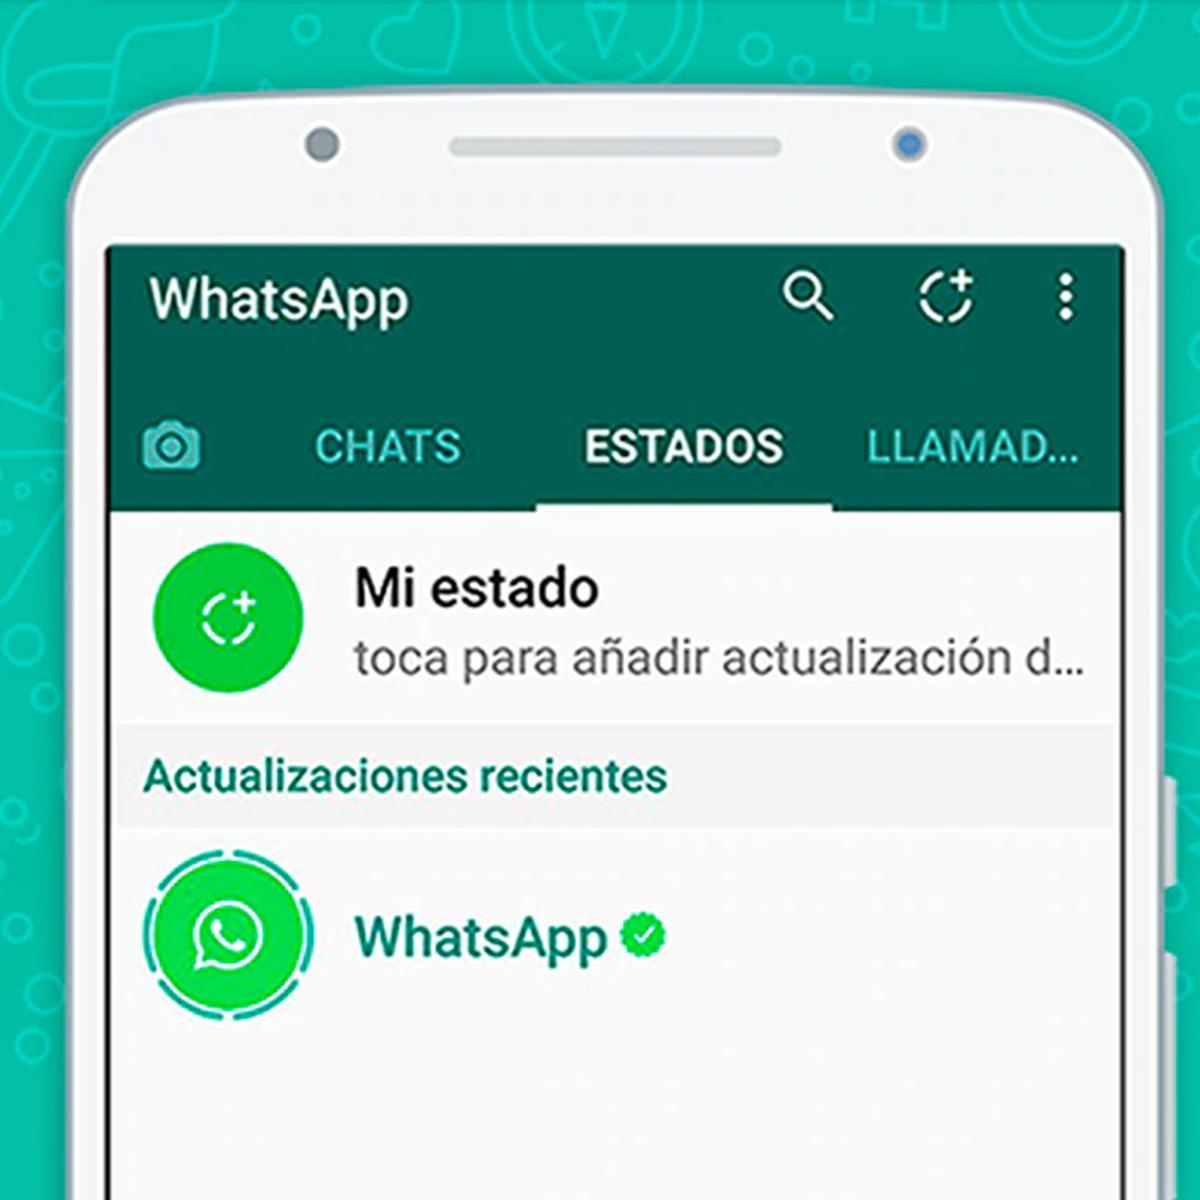 Las actualizaciones de estado de WhatsApp podrían aparecer pronto dentro de la lista de chats - 17 - mayo 19, 2022